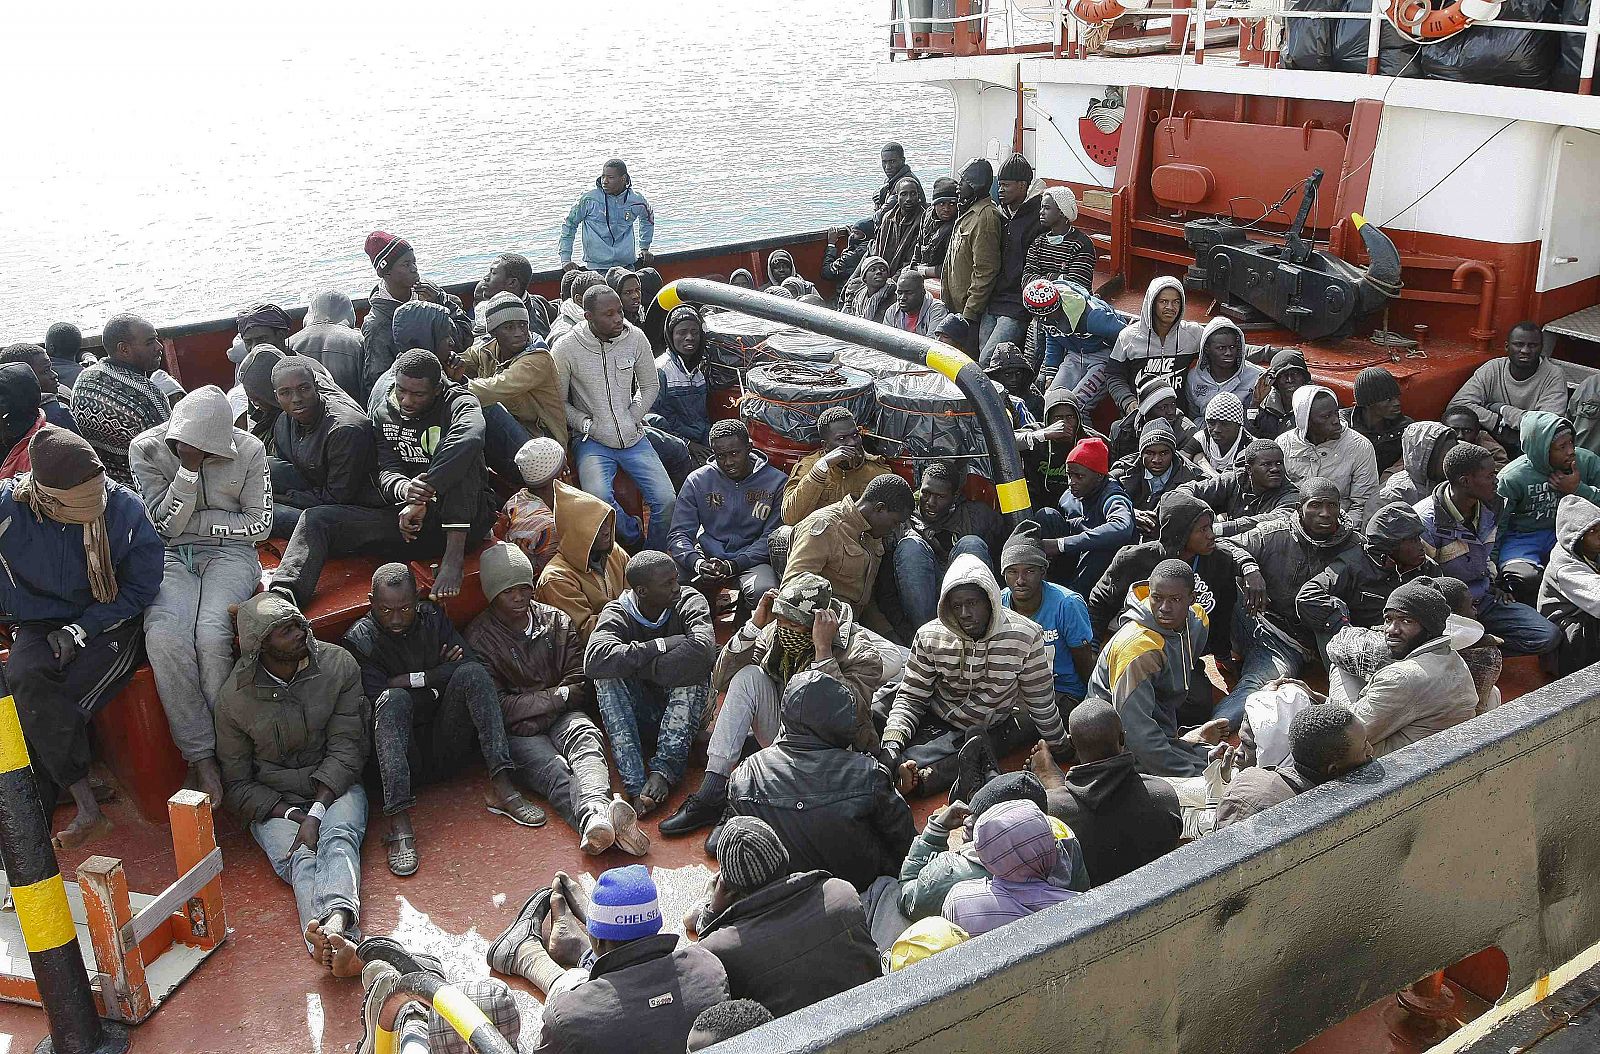 Los inmigrantes llegan al puerto siciliano de Pozzallo.